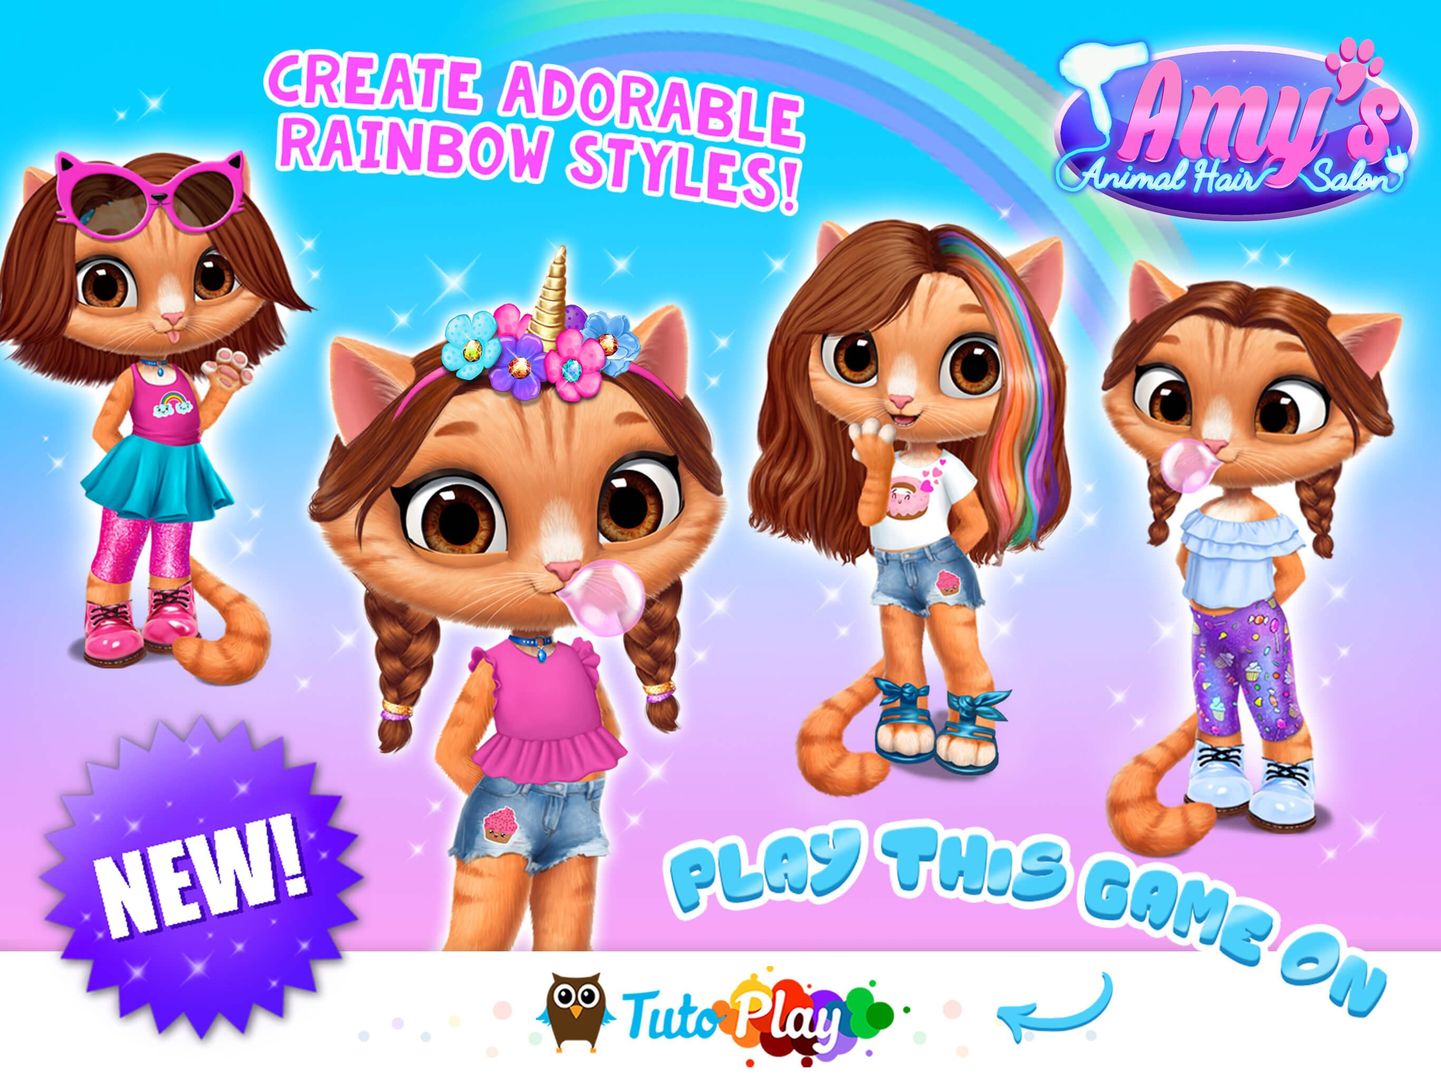 Screenshot of TutoPLAY Kids Games in One App